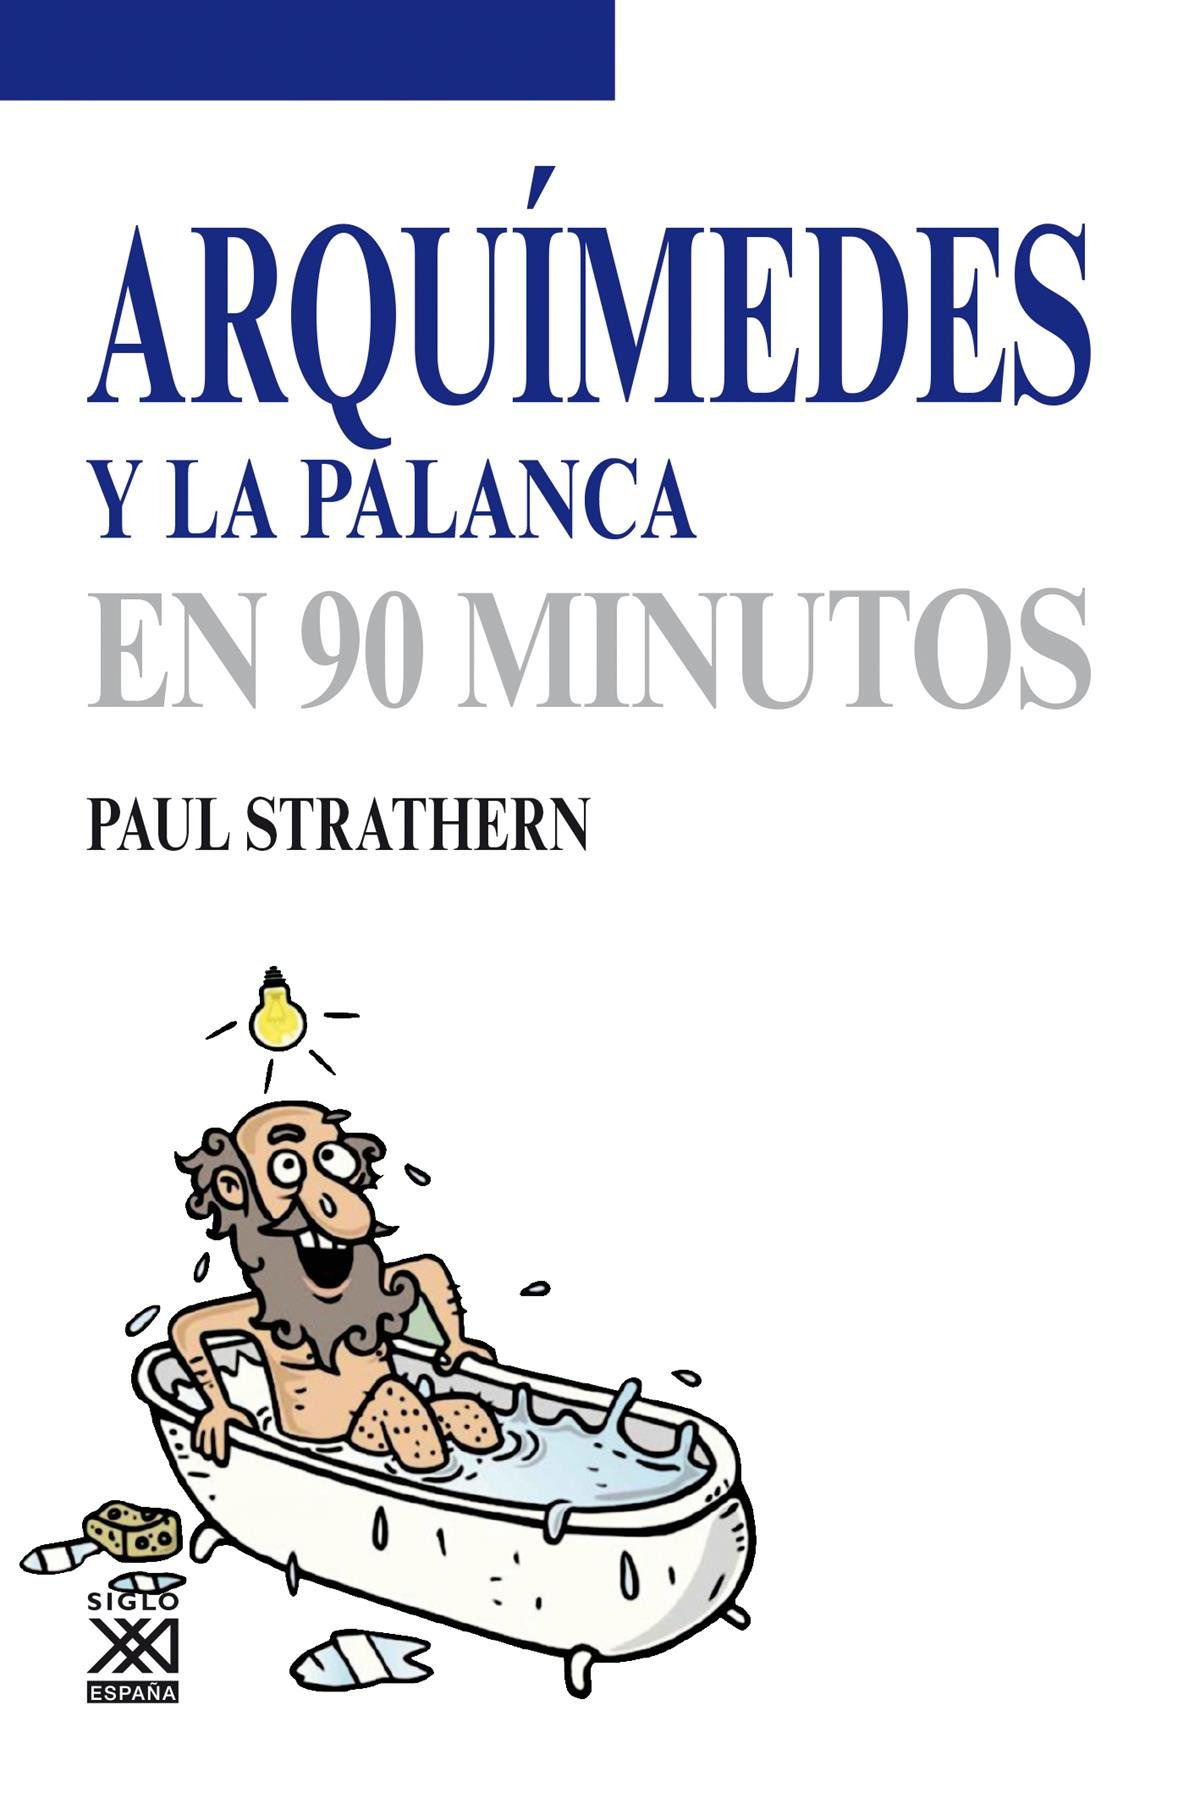 Científicos Arquímides en la palanca en 90 minutos - Strathern, Paul